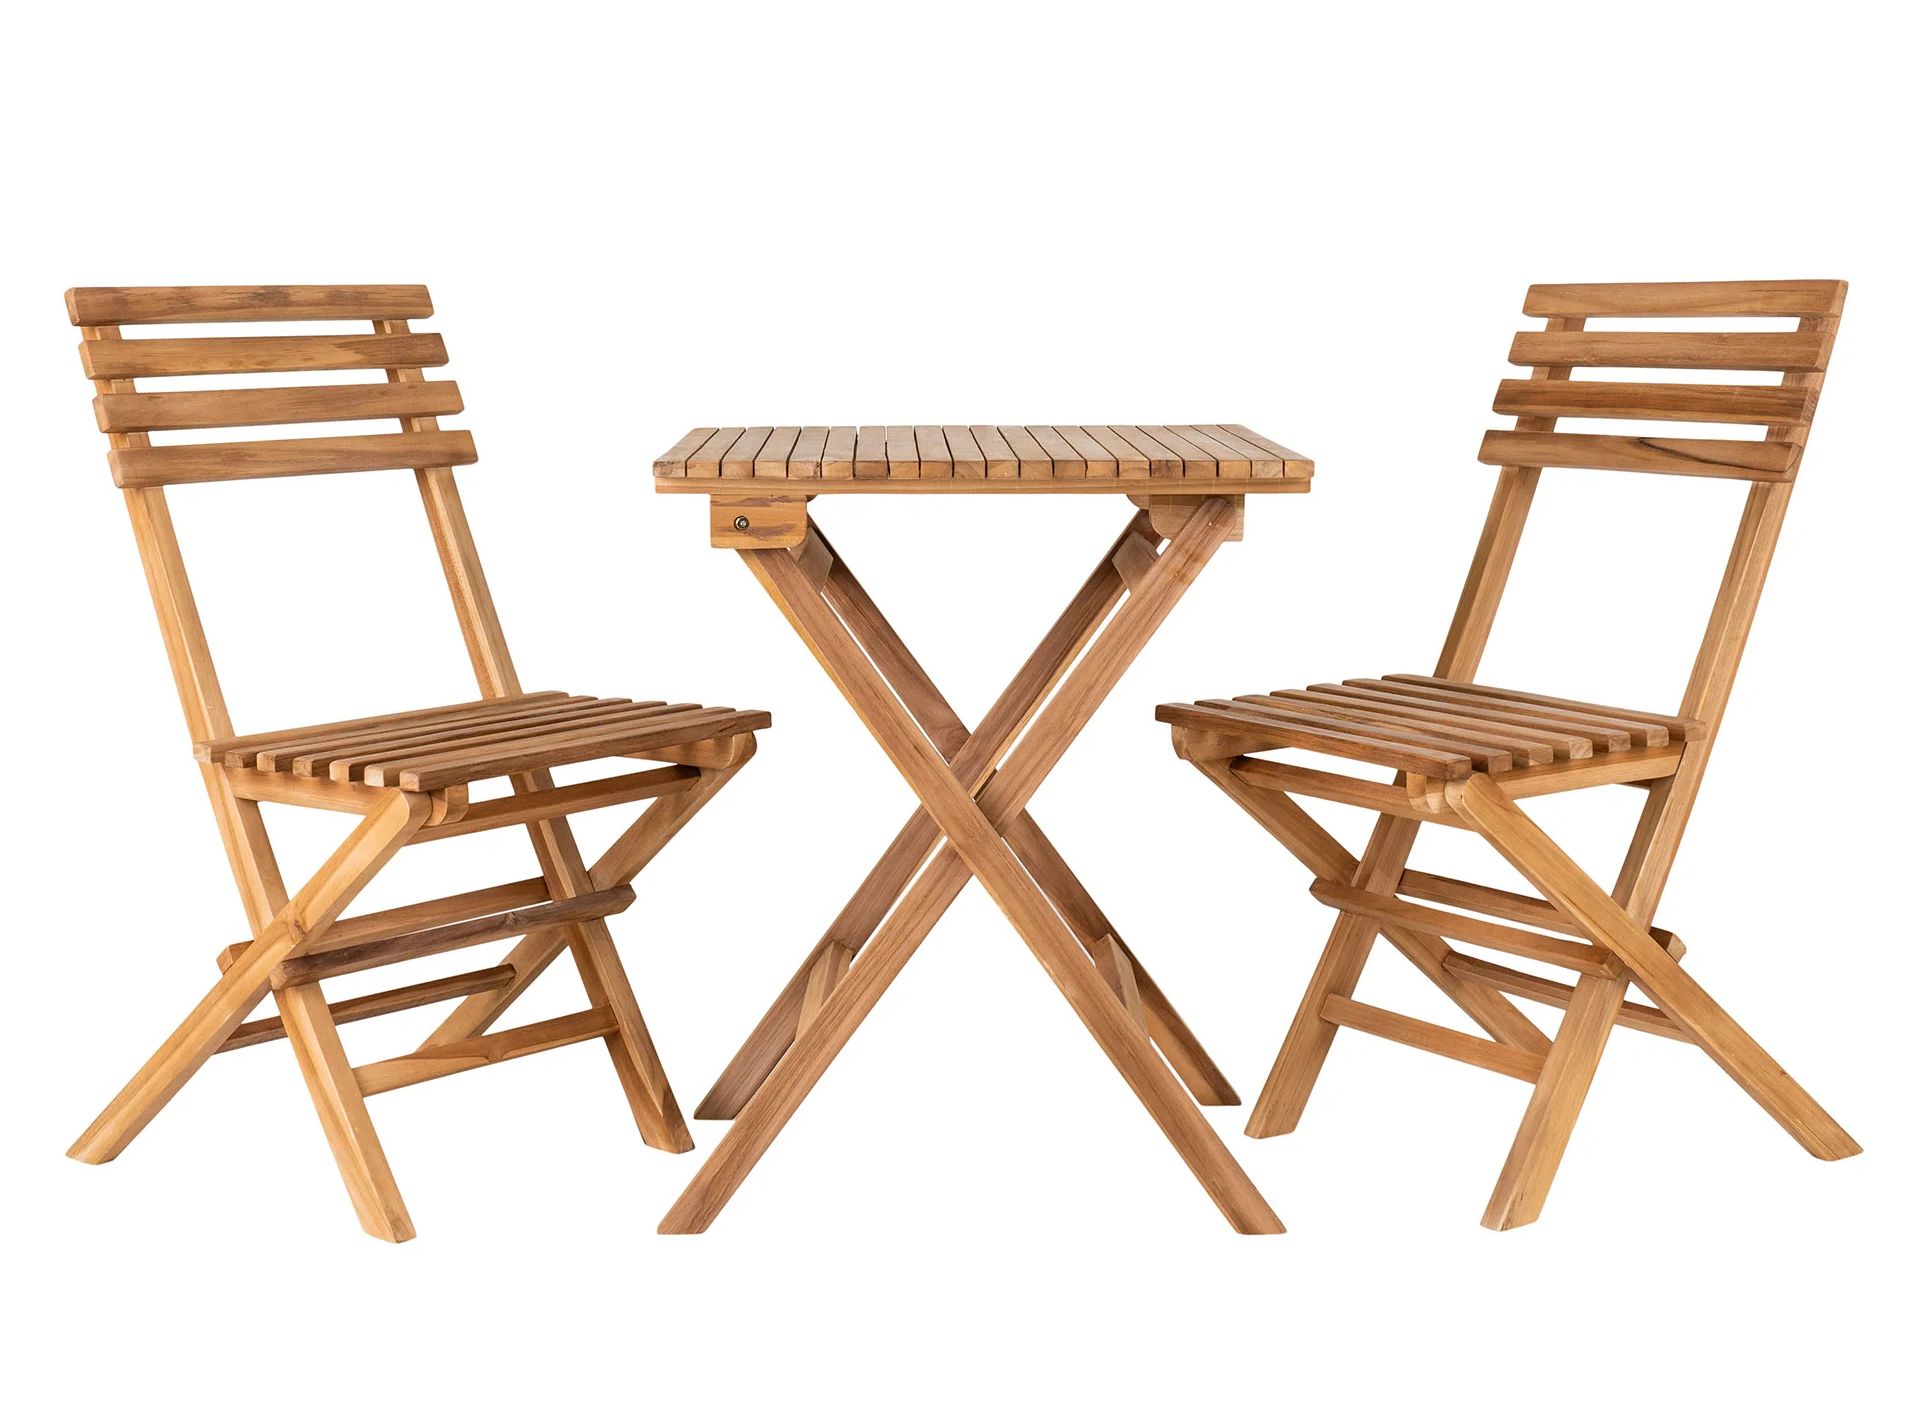 Cuenca Café Bistromöbel-Set aus Teak, 2 Stühle und 1 Tisch, klappbar